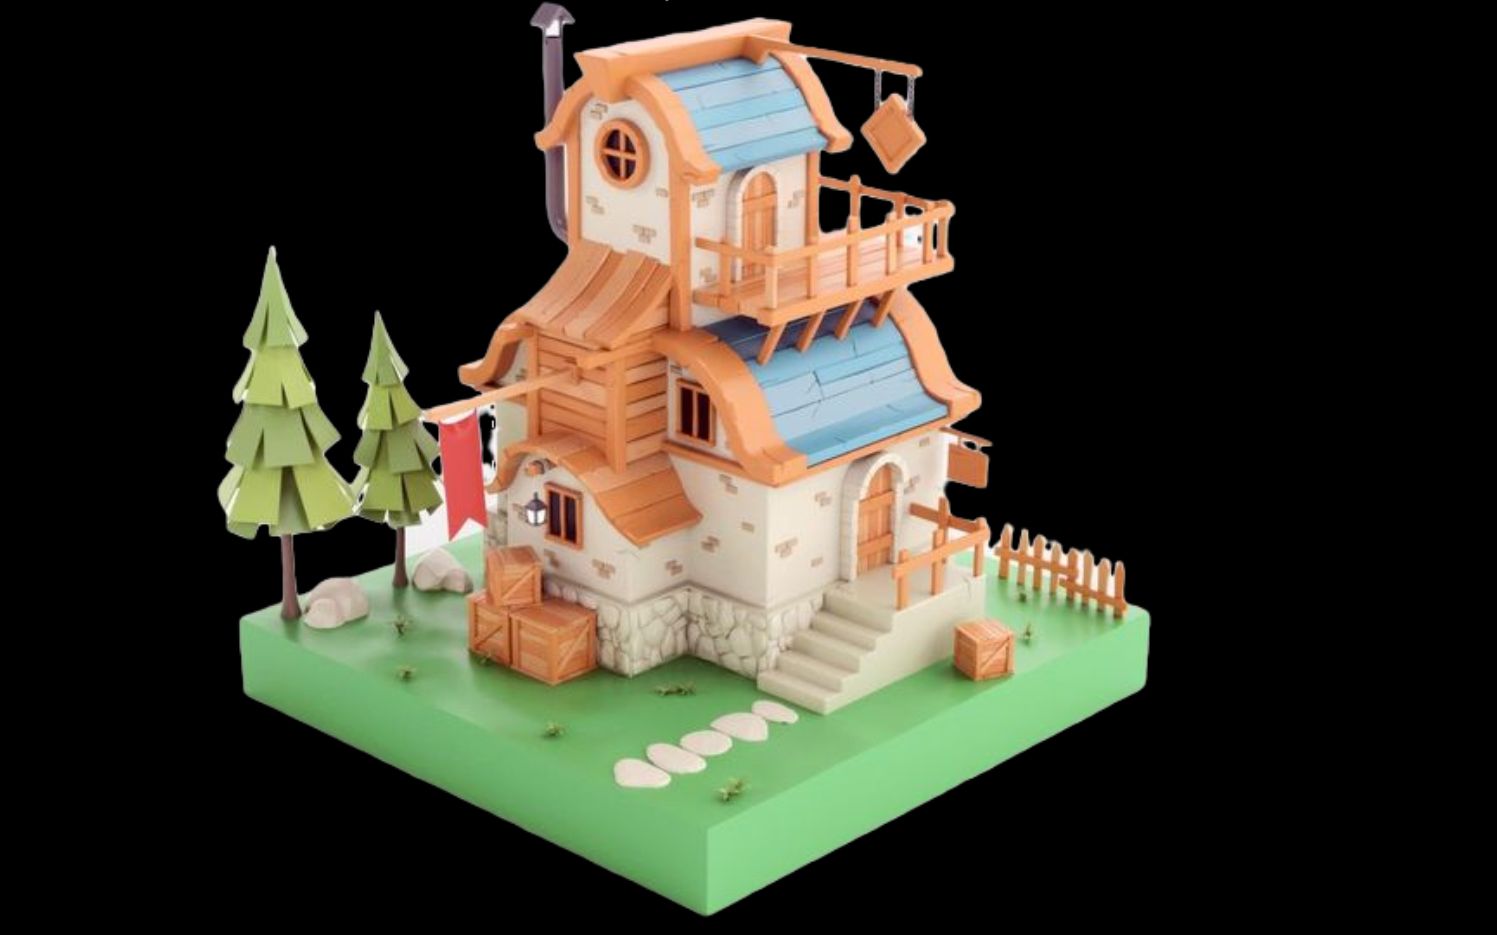 3dmax简单房子模型制作图片